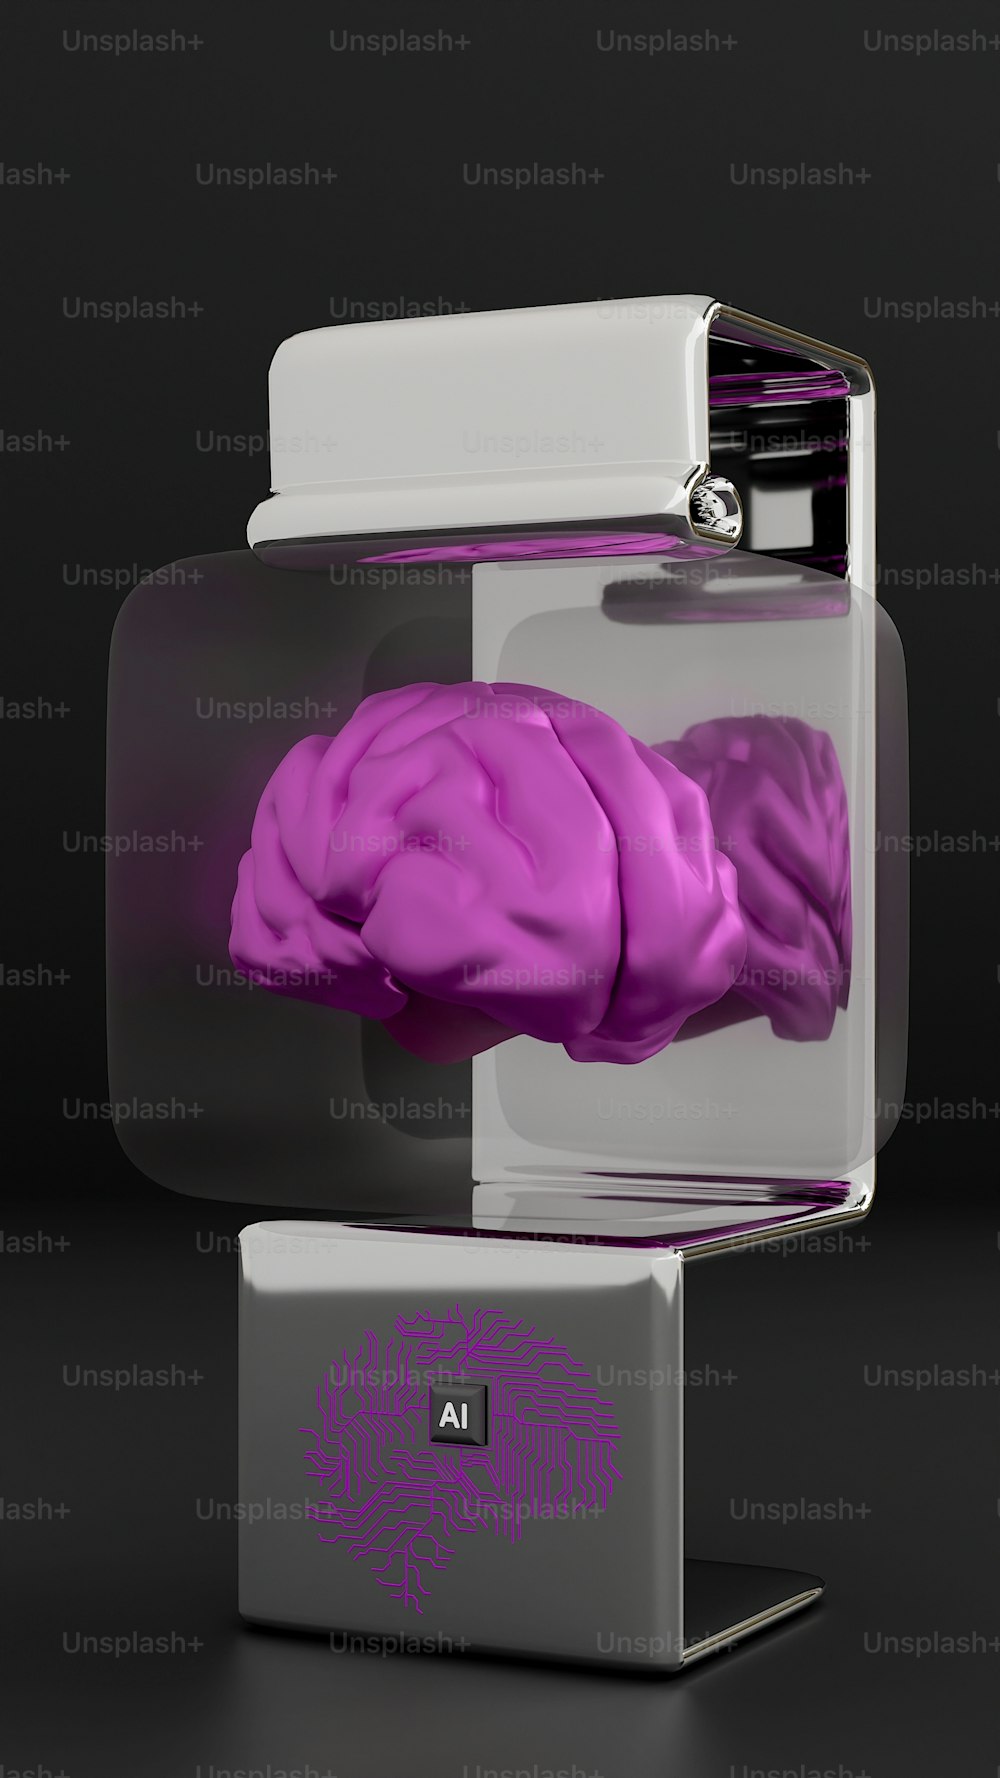 Un modelo púrpura de un cerebro humano en una vitrina